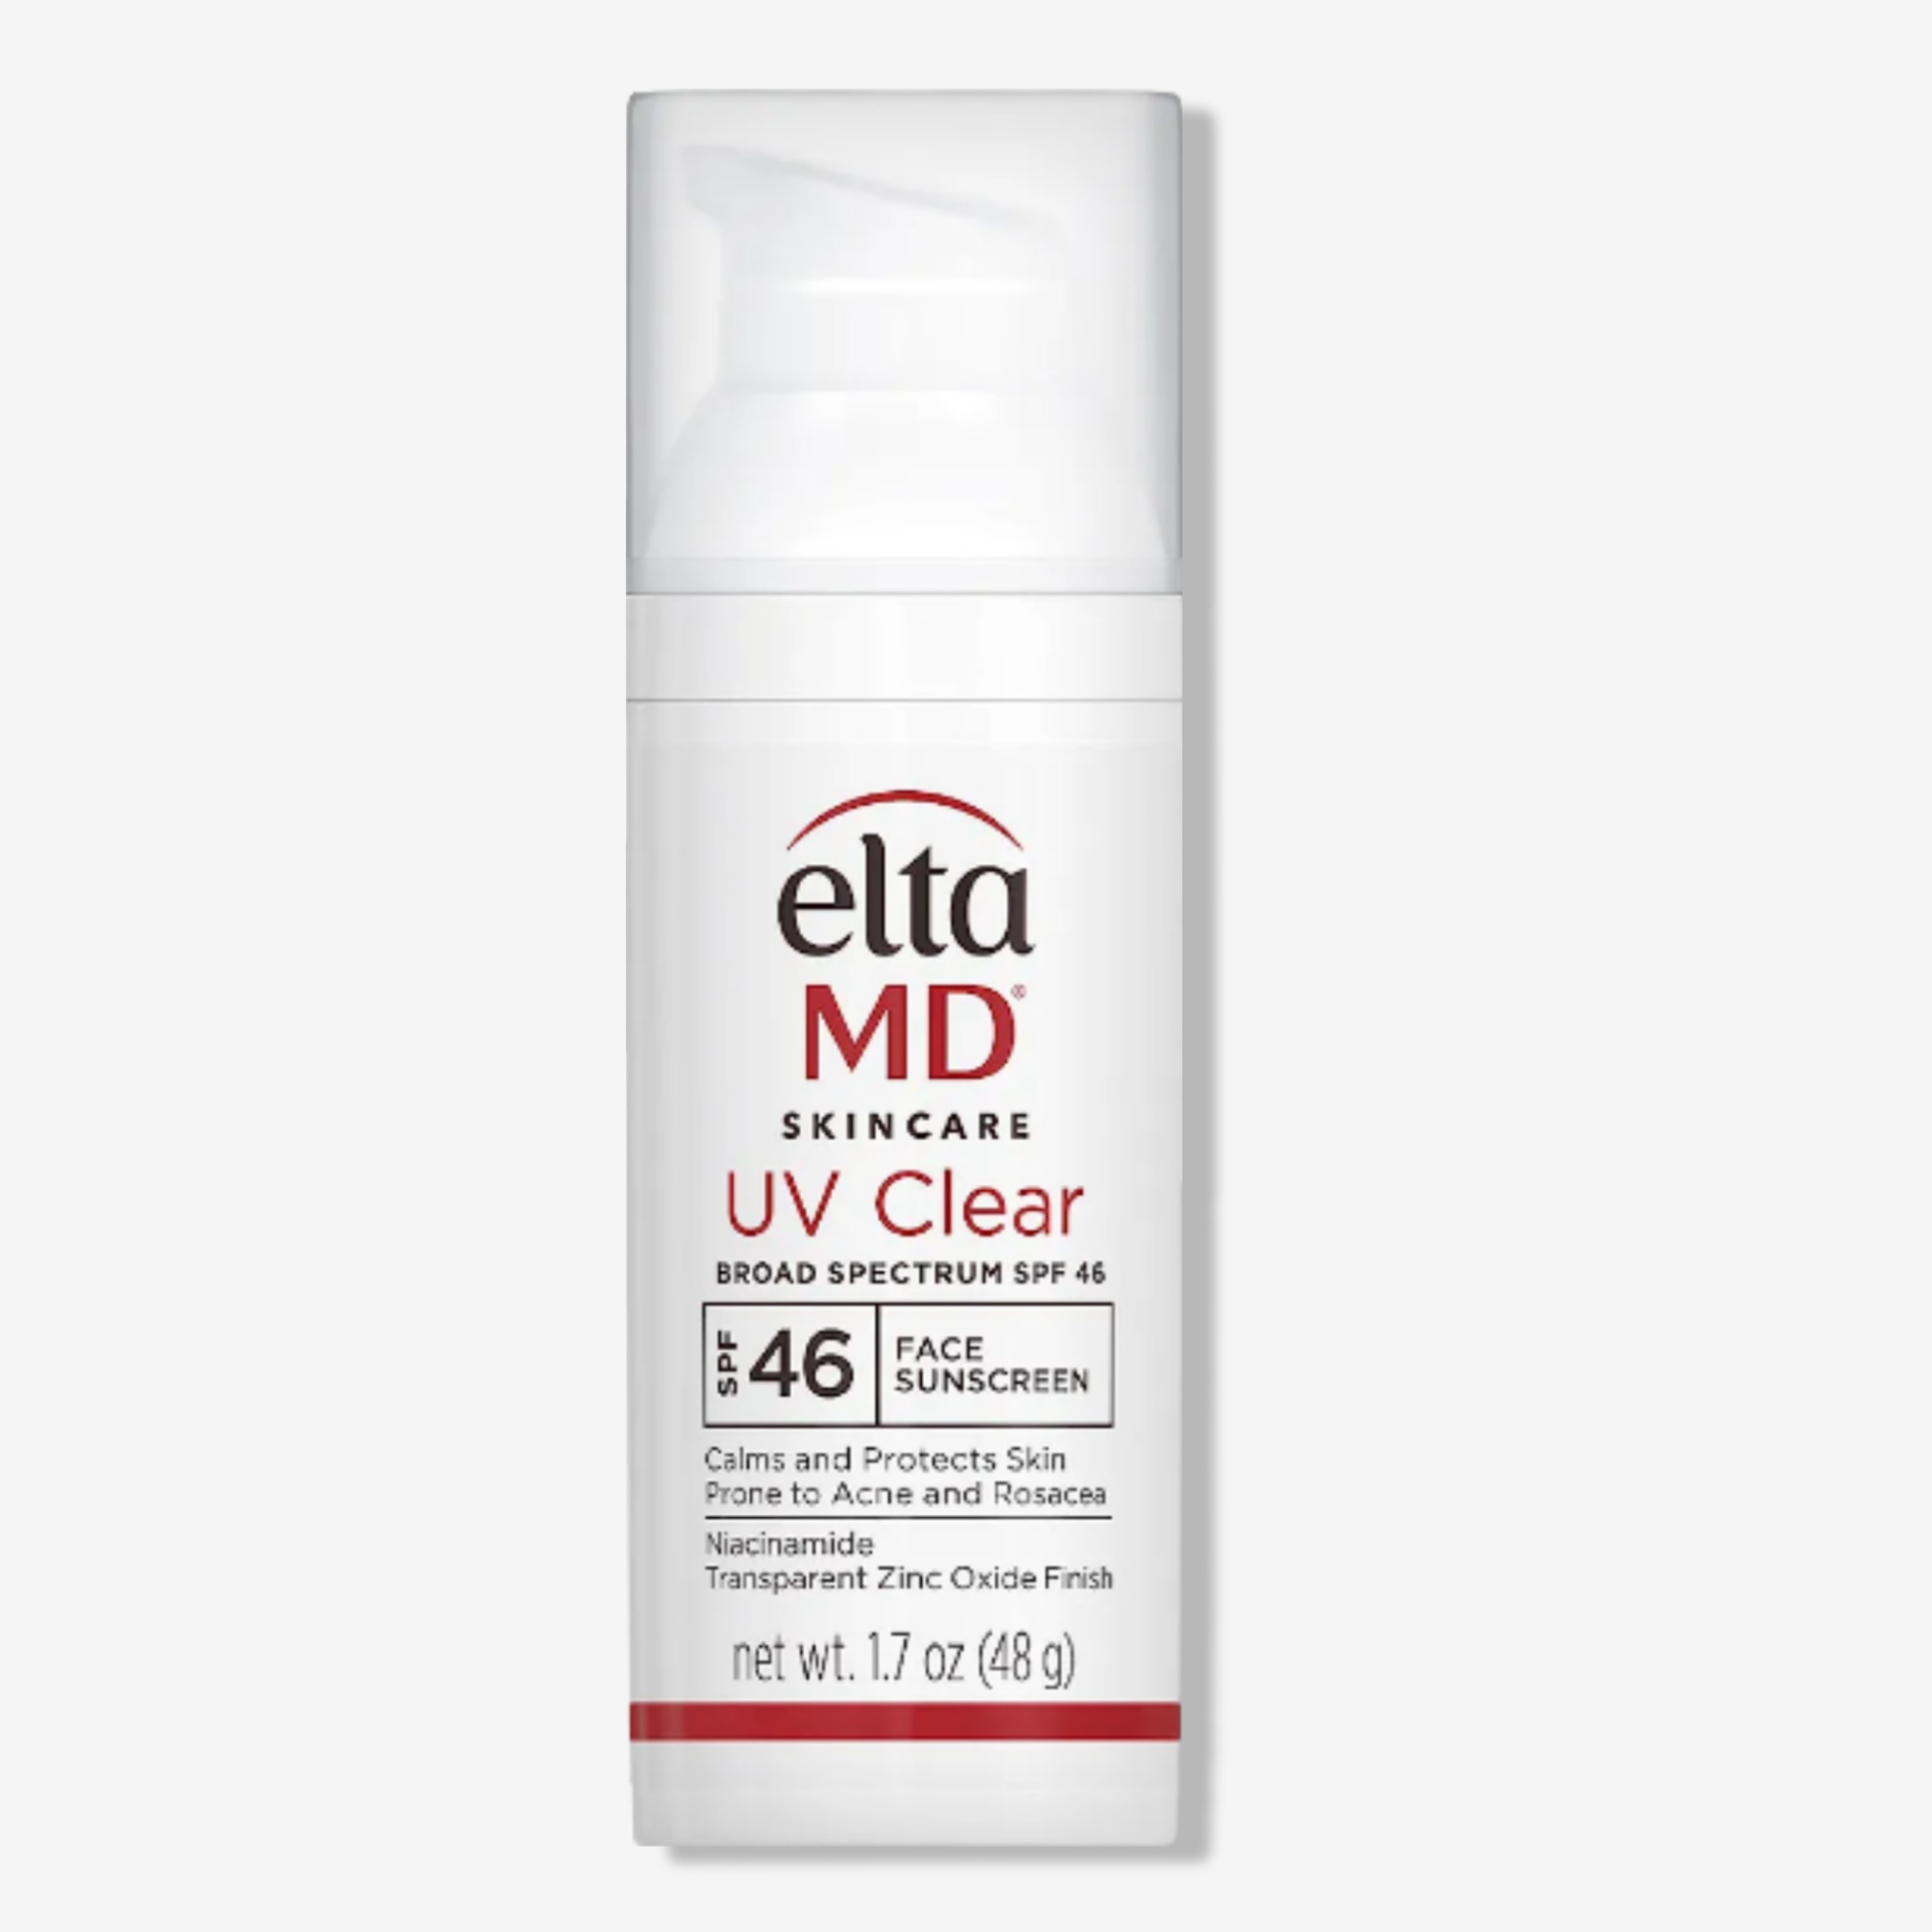 EltaMD UV Clear Face Sunscreen, SPF 46